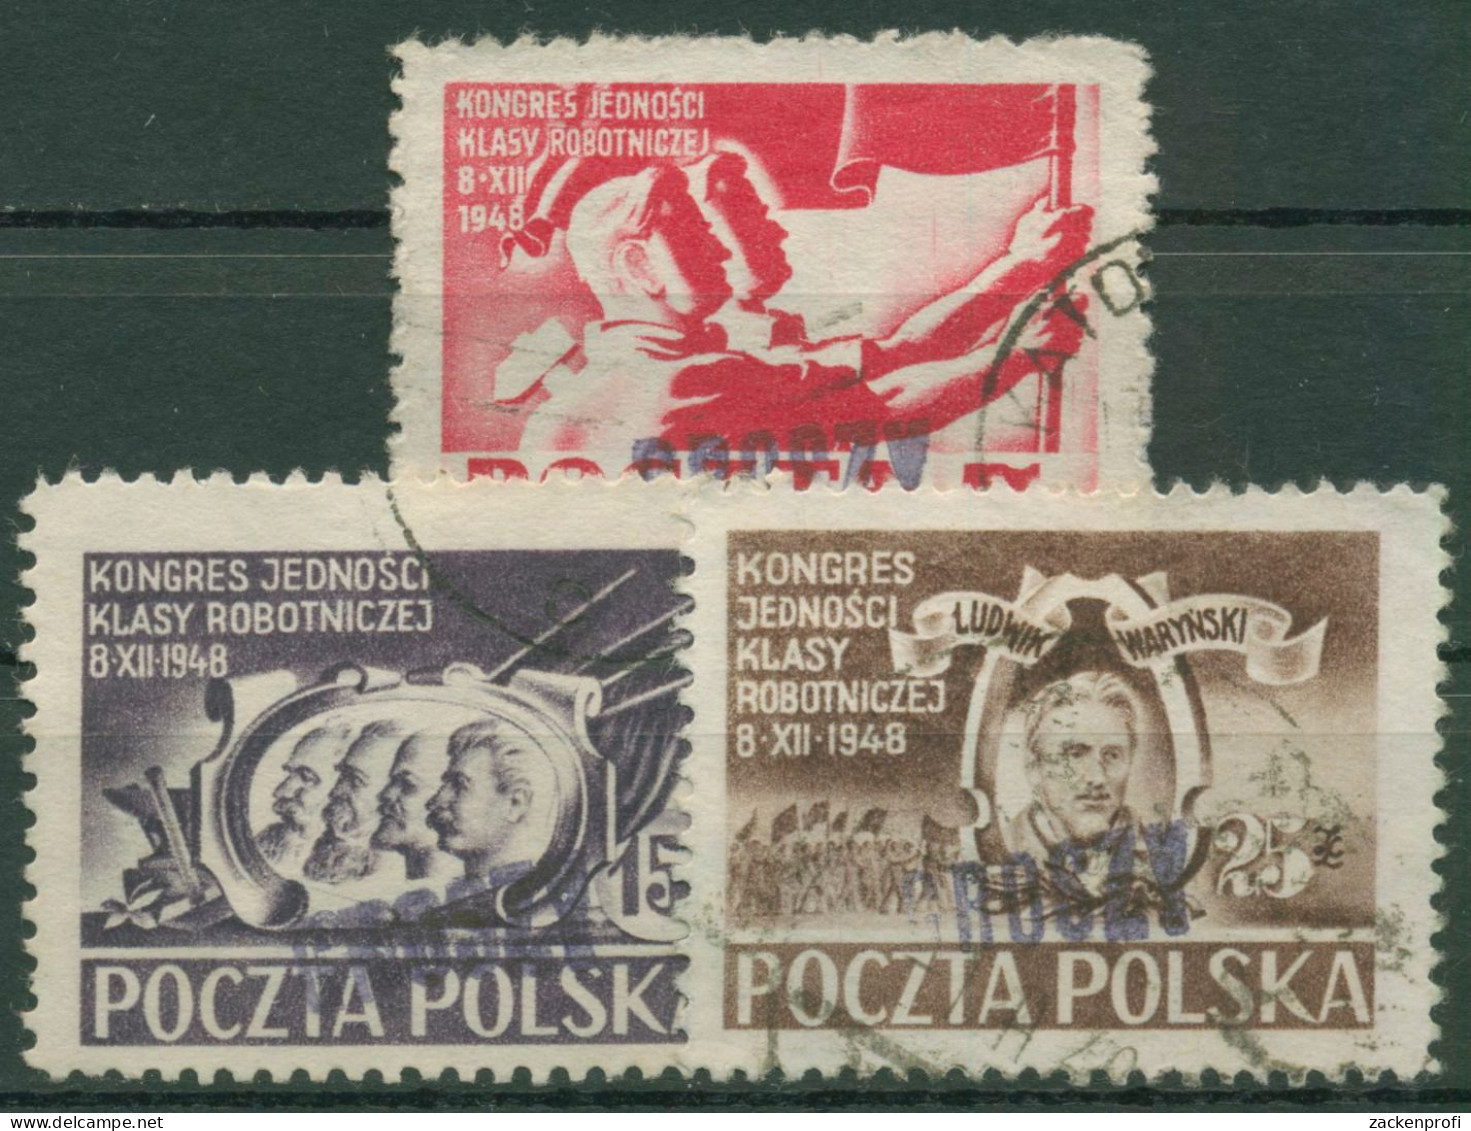 Polen 1950 Arbeiterpartei MiNr. 505/07 Mit Aufdruck 607/09 Gestempelt - Used Stamps